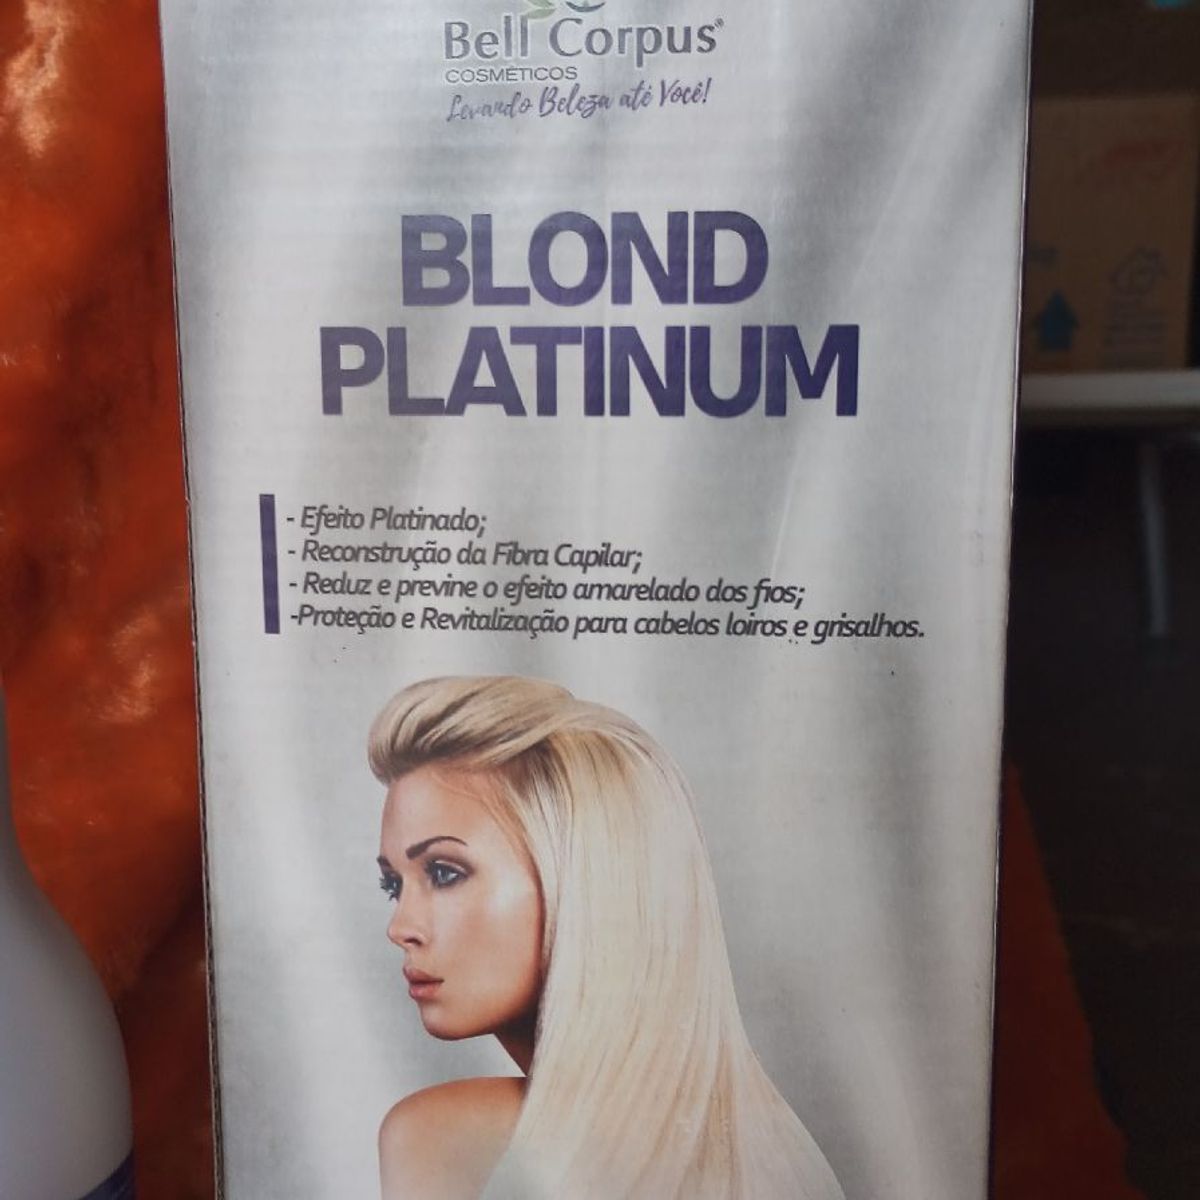 Kit Blond Platinum., Produto p/ Cabelos Feminino Bell Corpus Nunca Usado  94435404